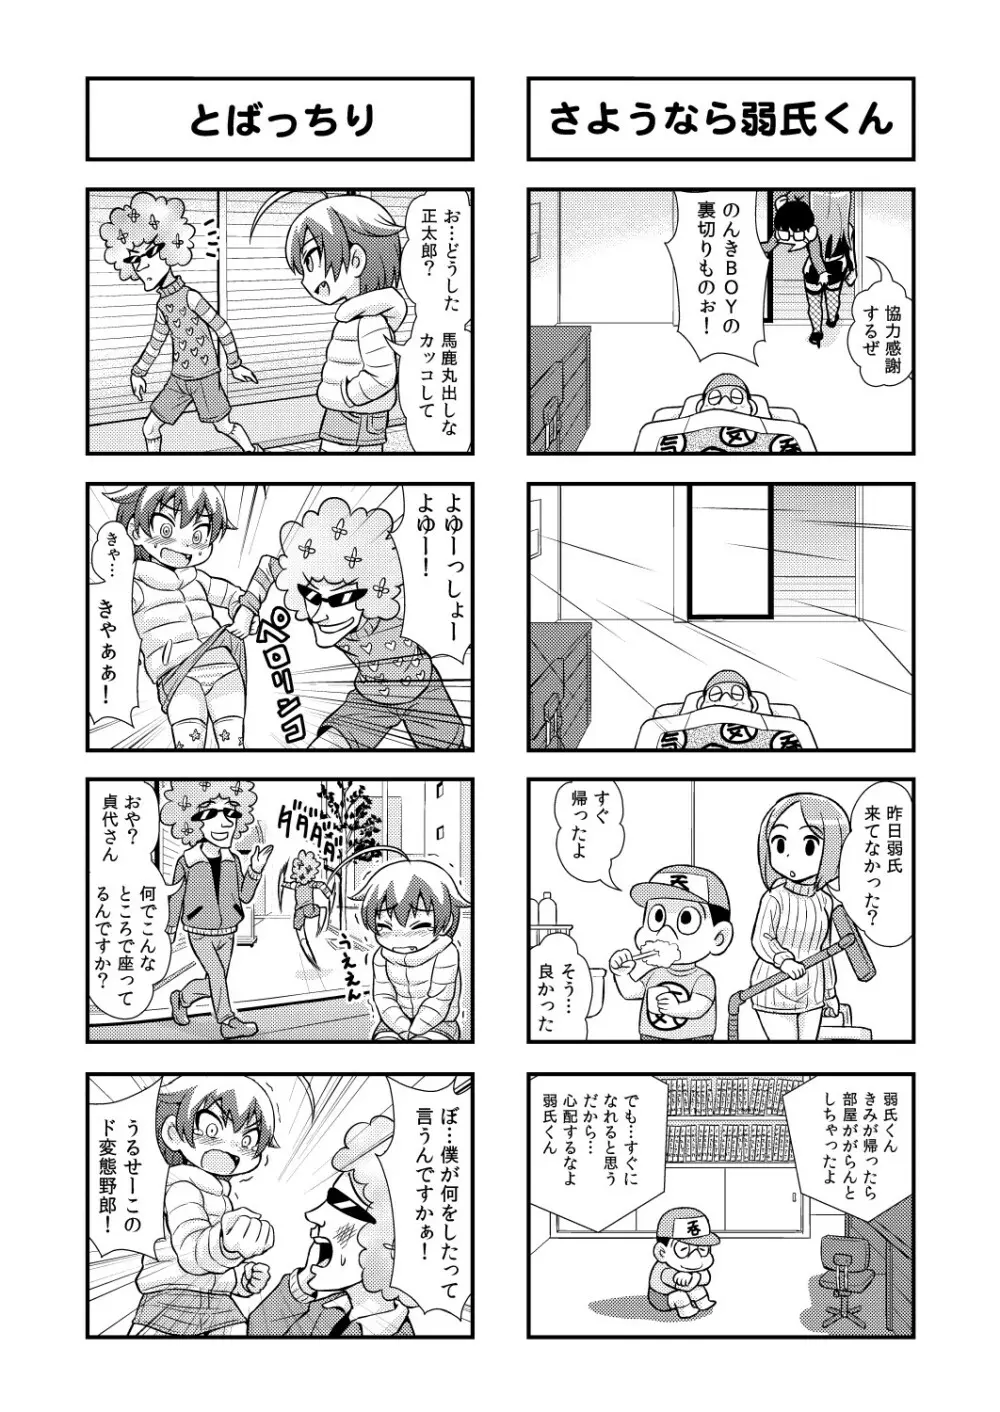 のんきBOY 1-35 50ページ